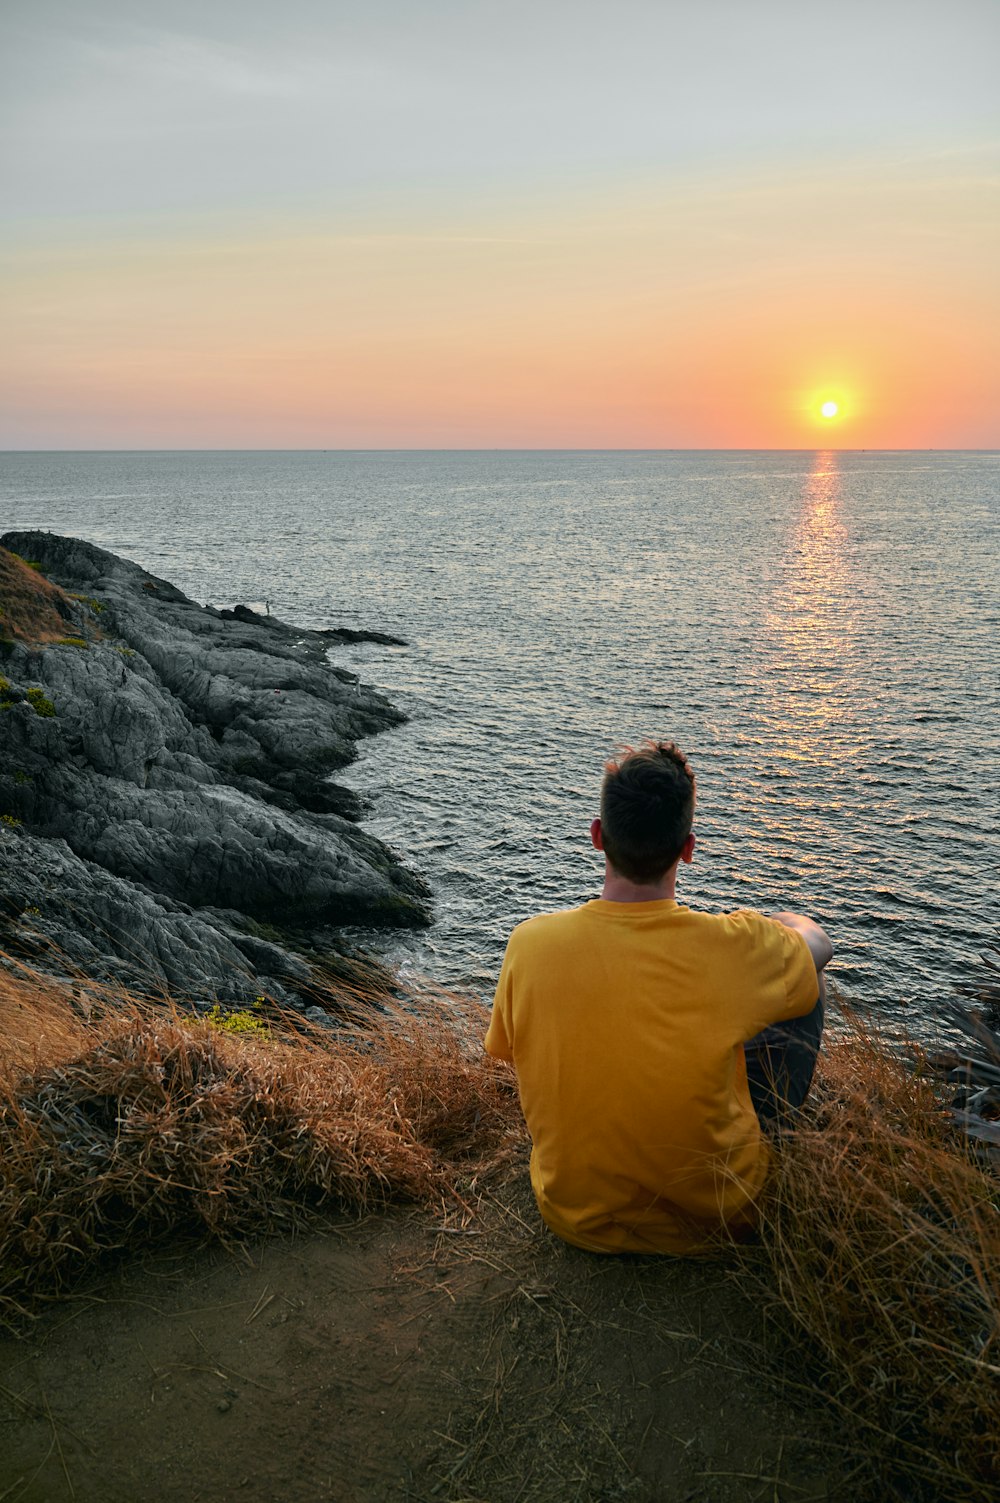 Mann im gelben Hemd sitzt bei Sonnenuntergang auf Felsen in der Nähe von Wasser